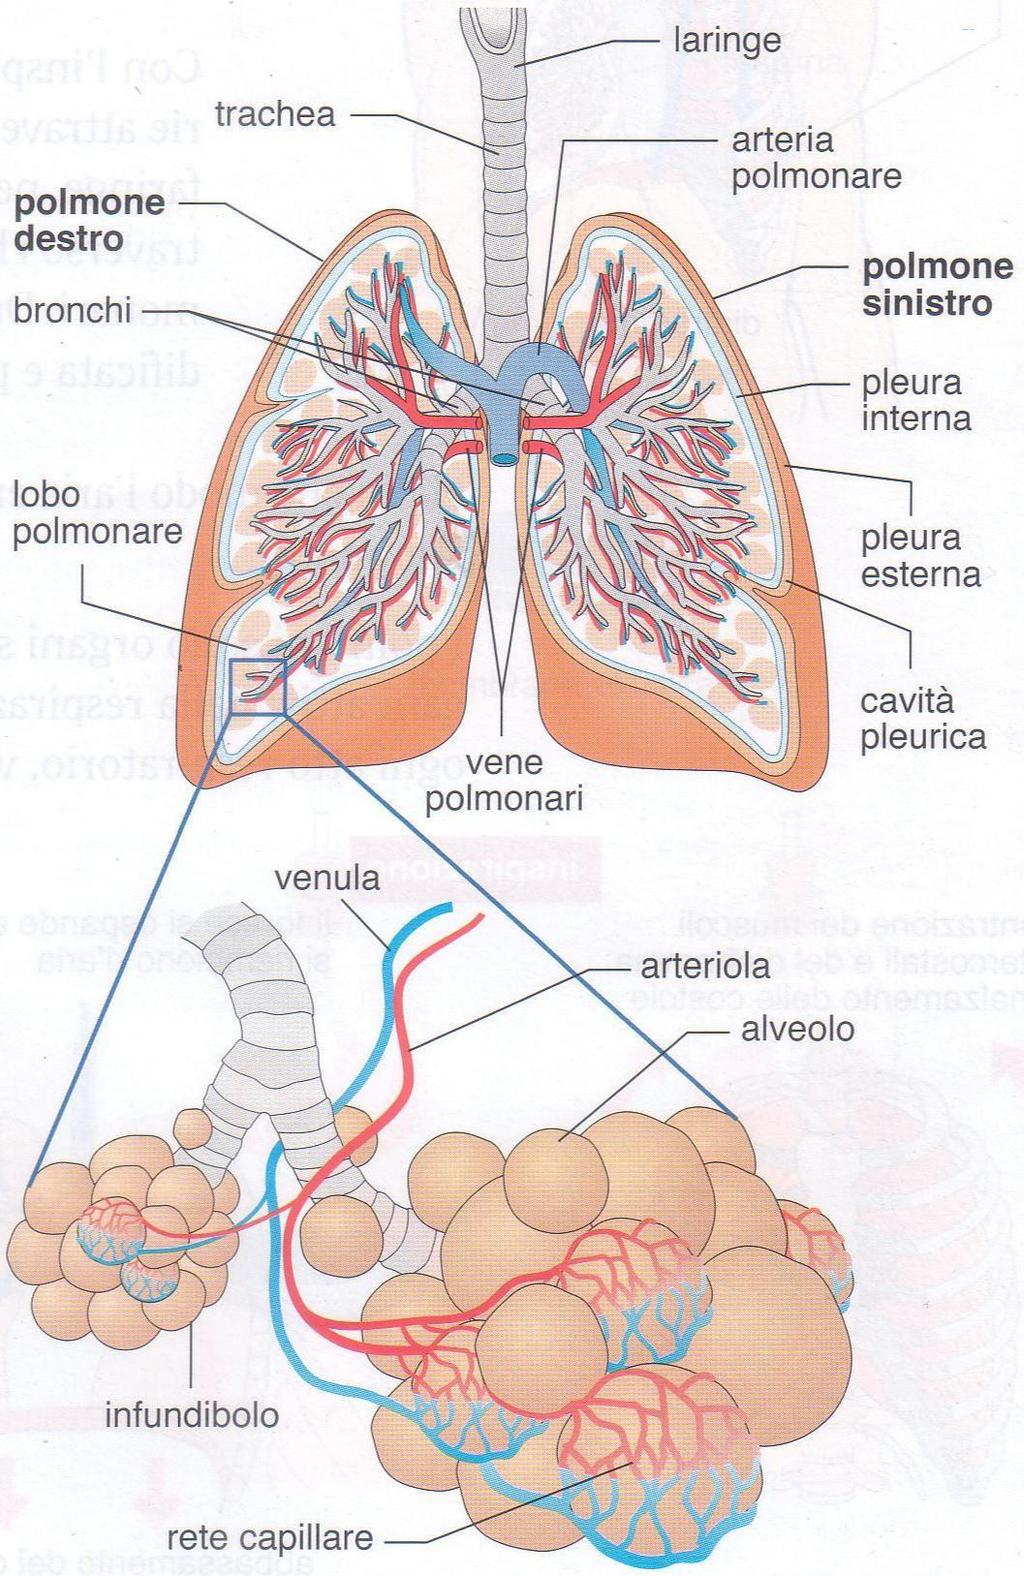 All esterno i polmoni sono ricoperti da una membrana, la pleura, formata da due strati.